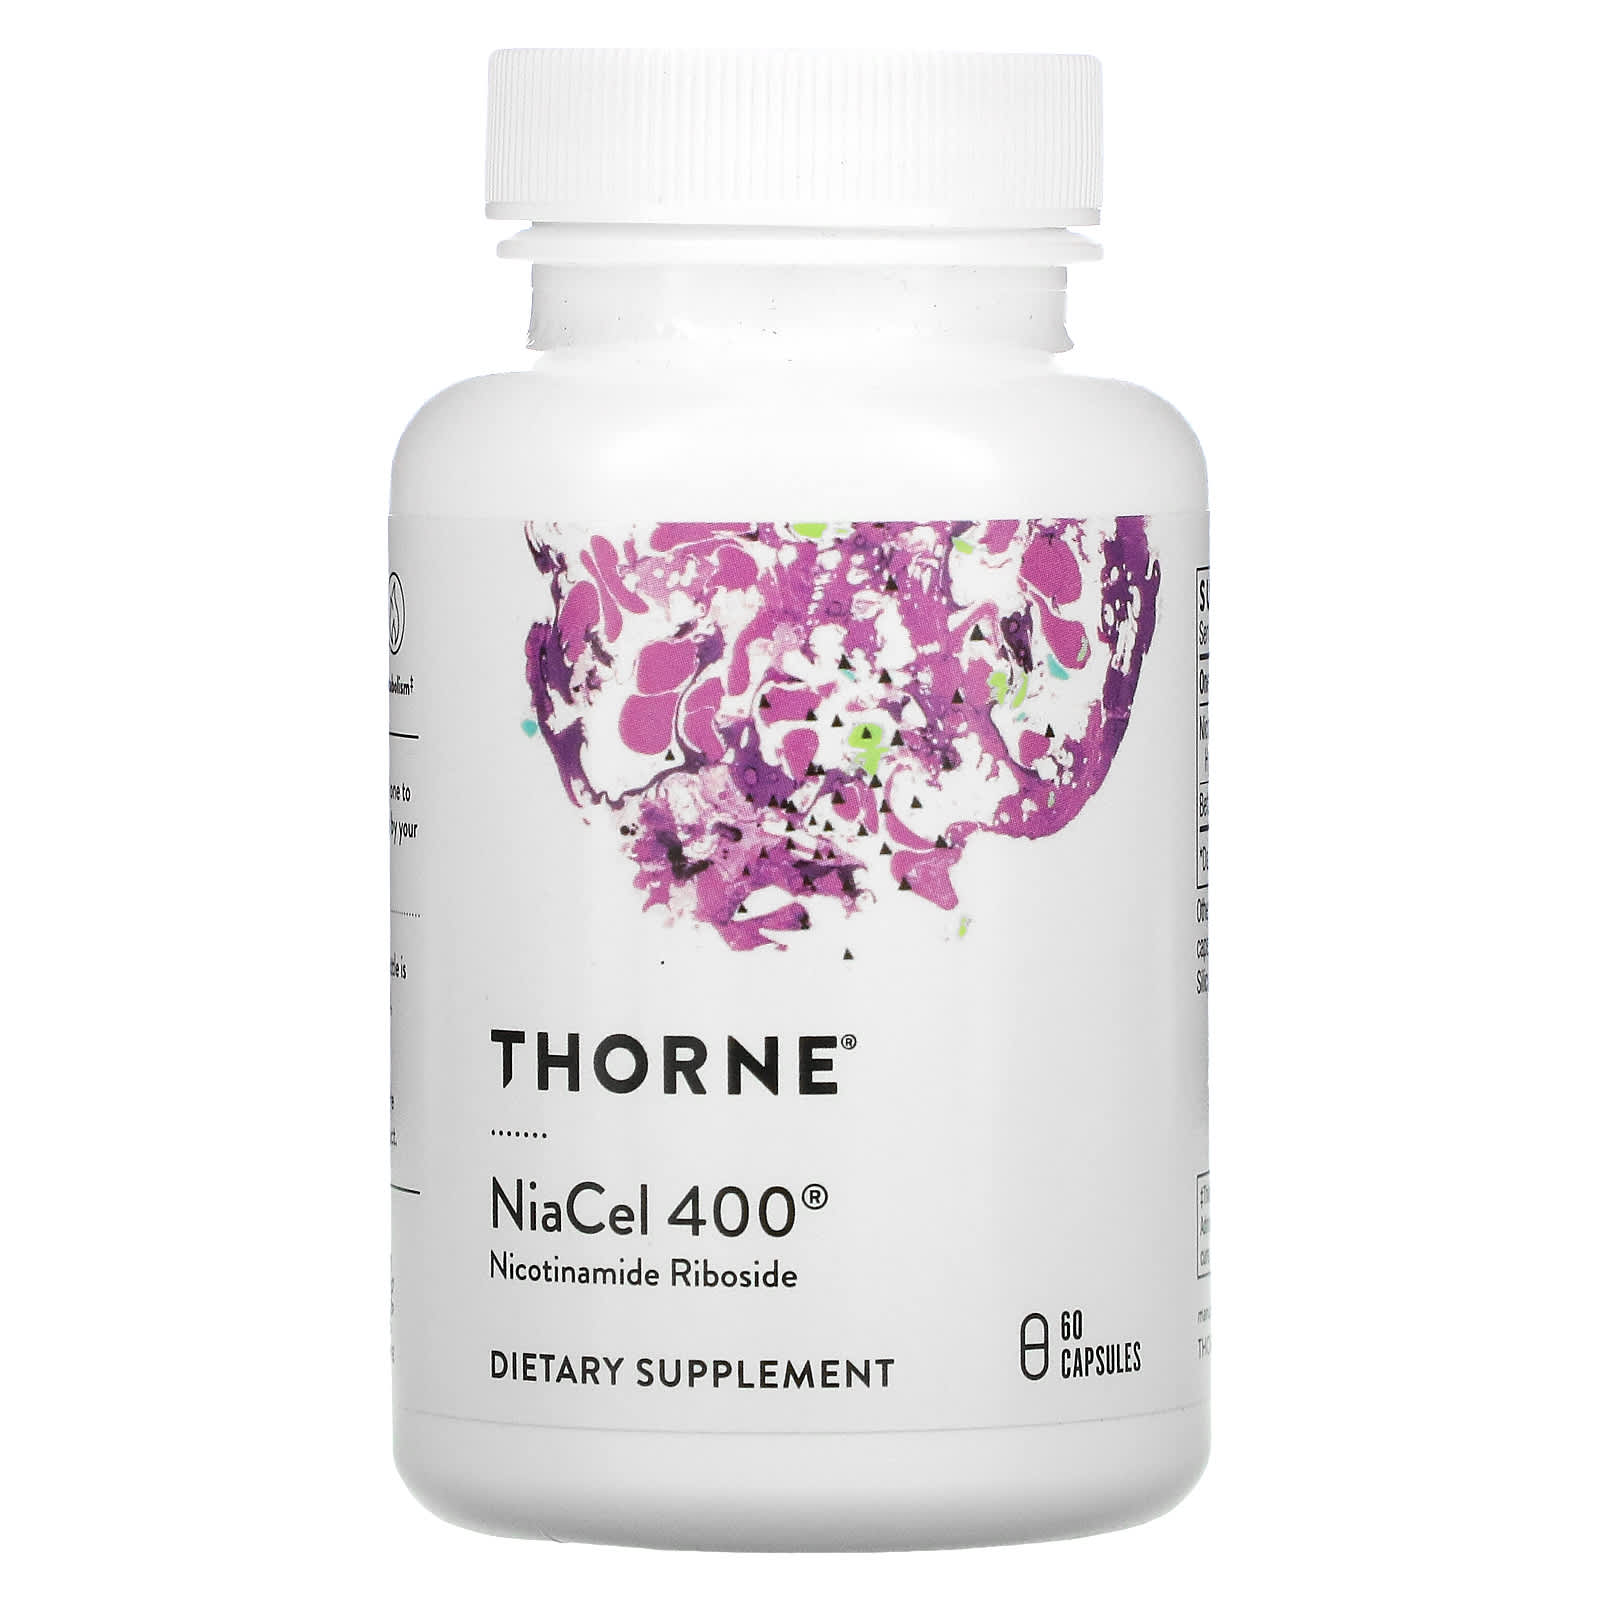 Пищевая Добавка Thorne NiaCel 400, 60 капсул цена и фото